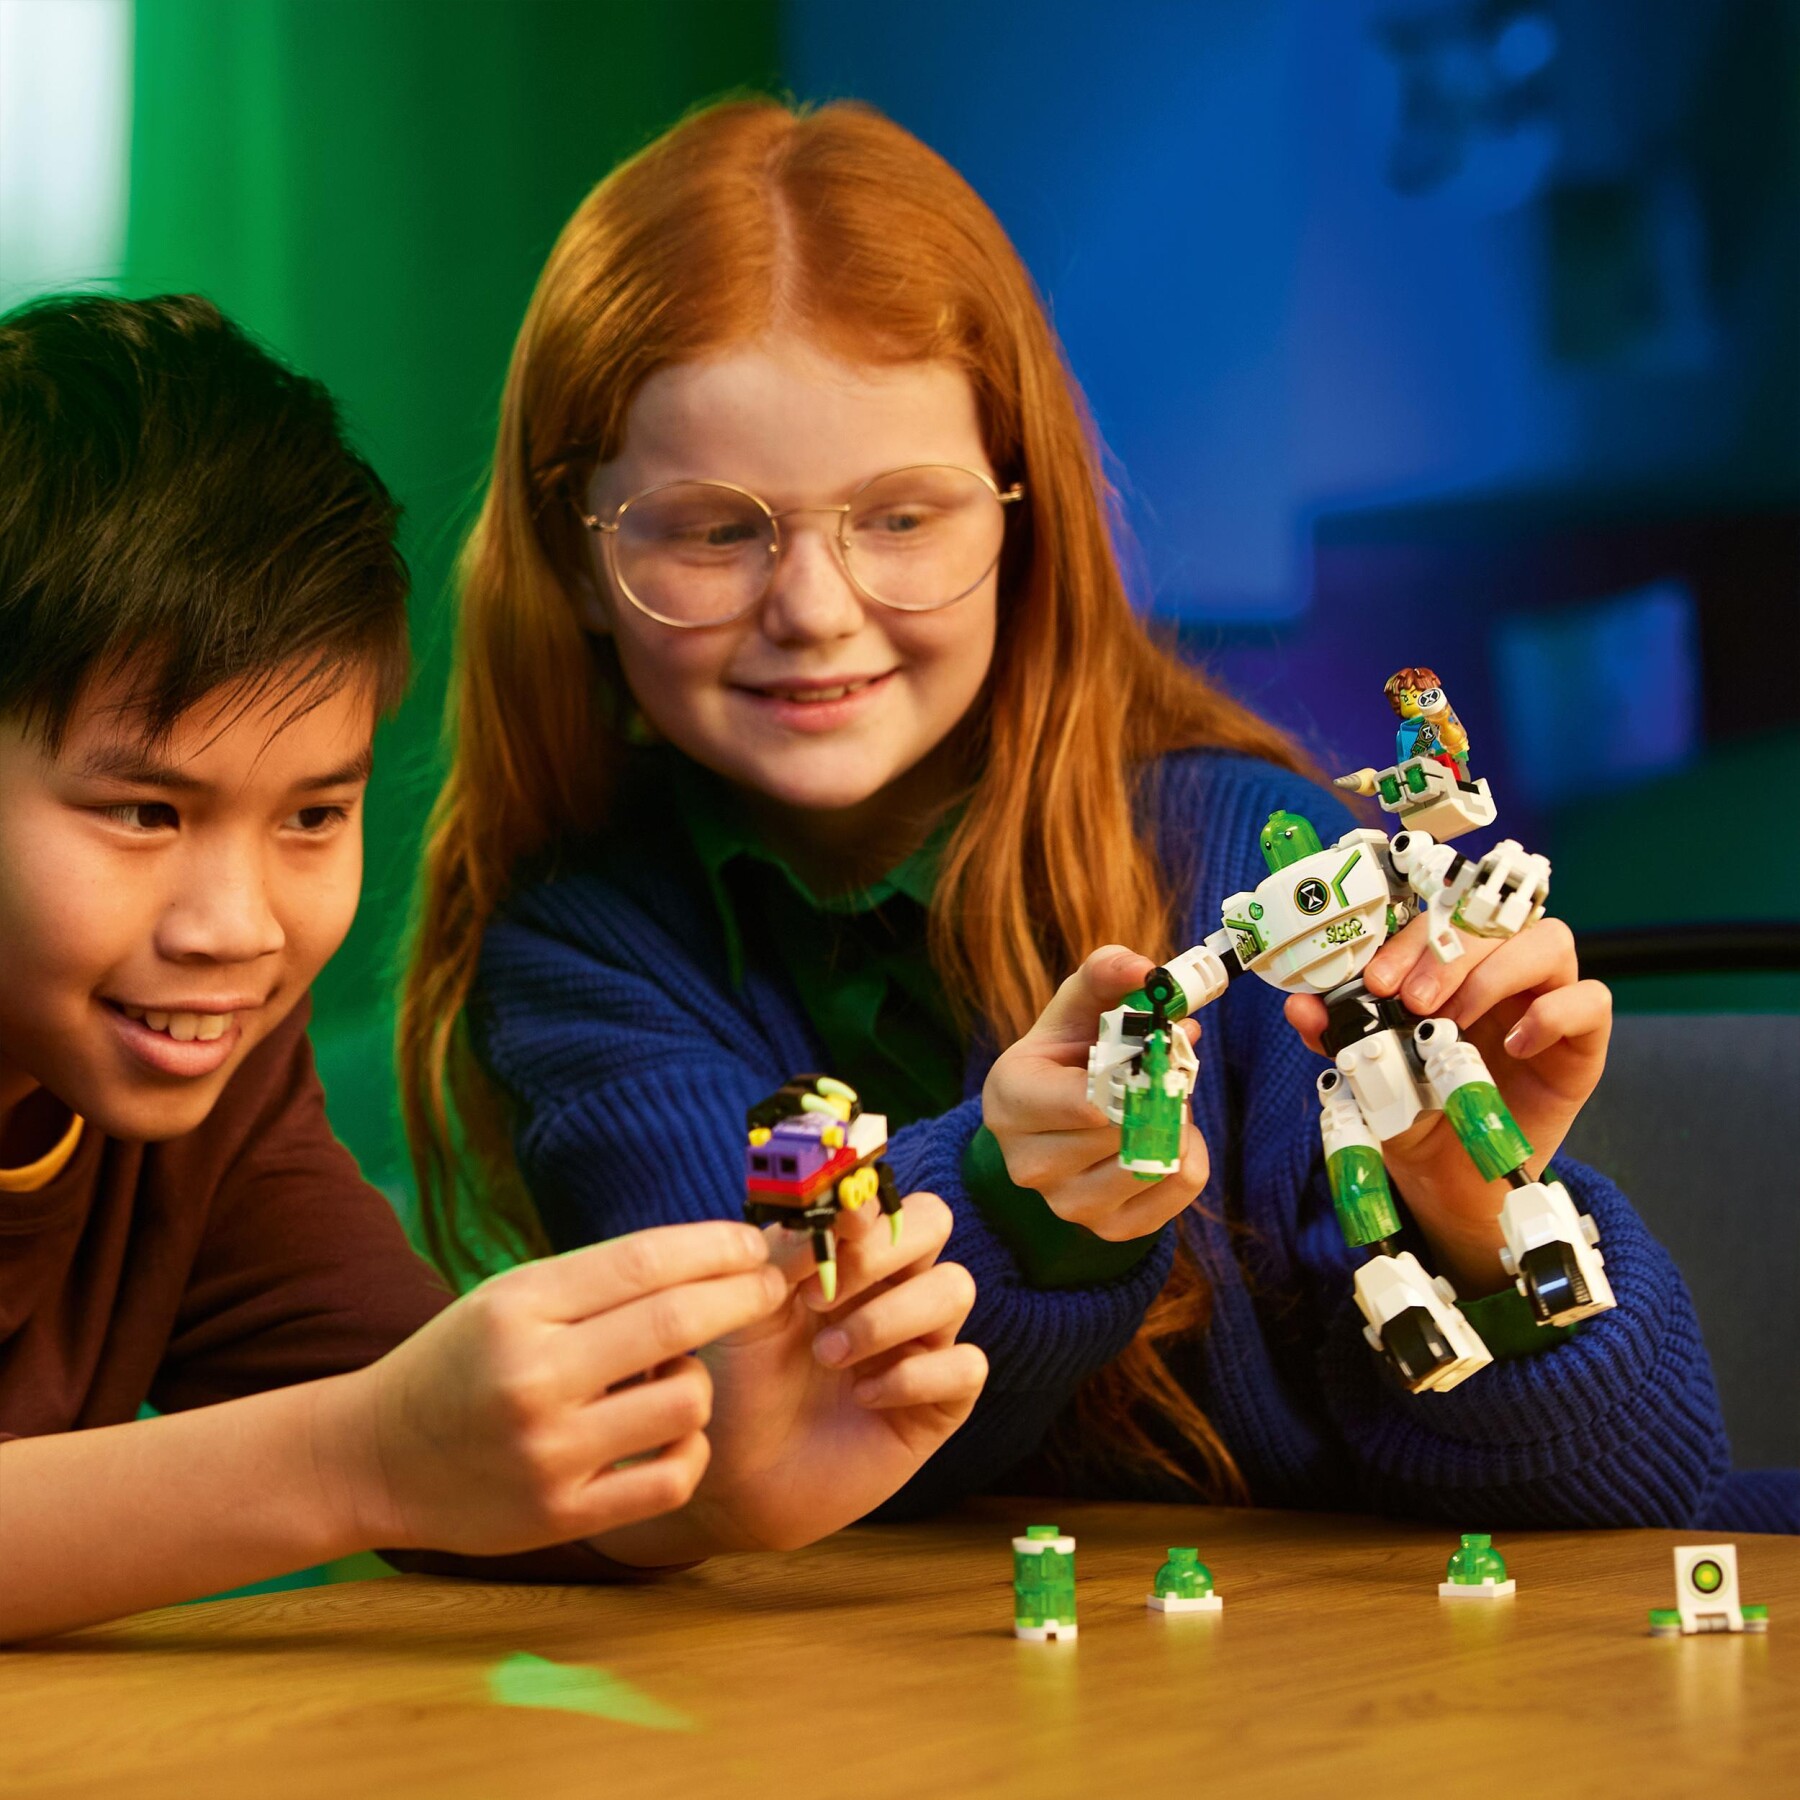 Lego dreamzzz 71454 mateo e il robot z-blob, grande robot giocattolo con minifigure di jayden e mateo, basato sulla serie tv - Lego, LEGO DREAMZZZ